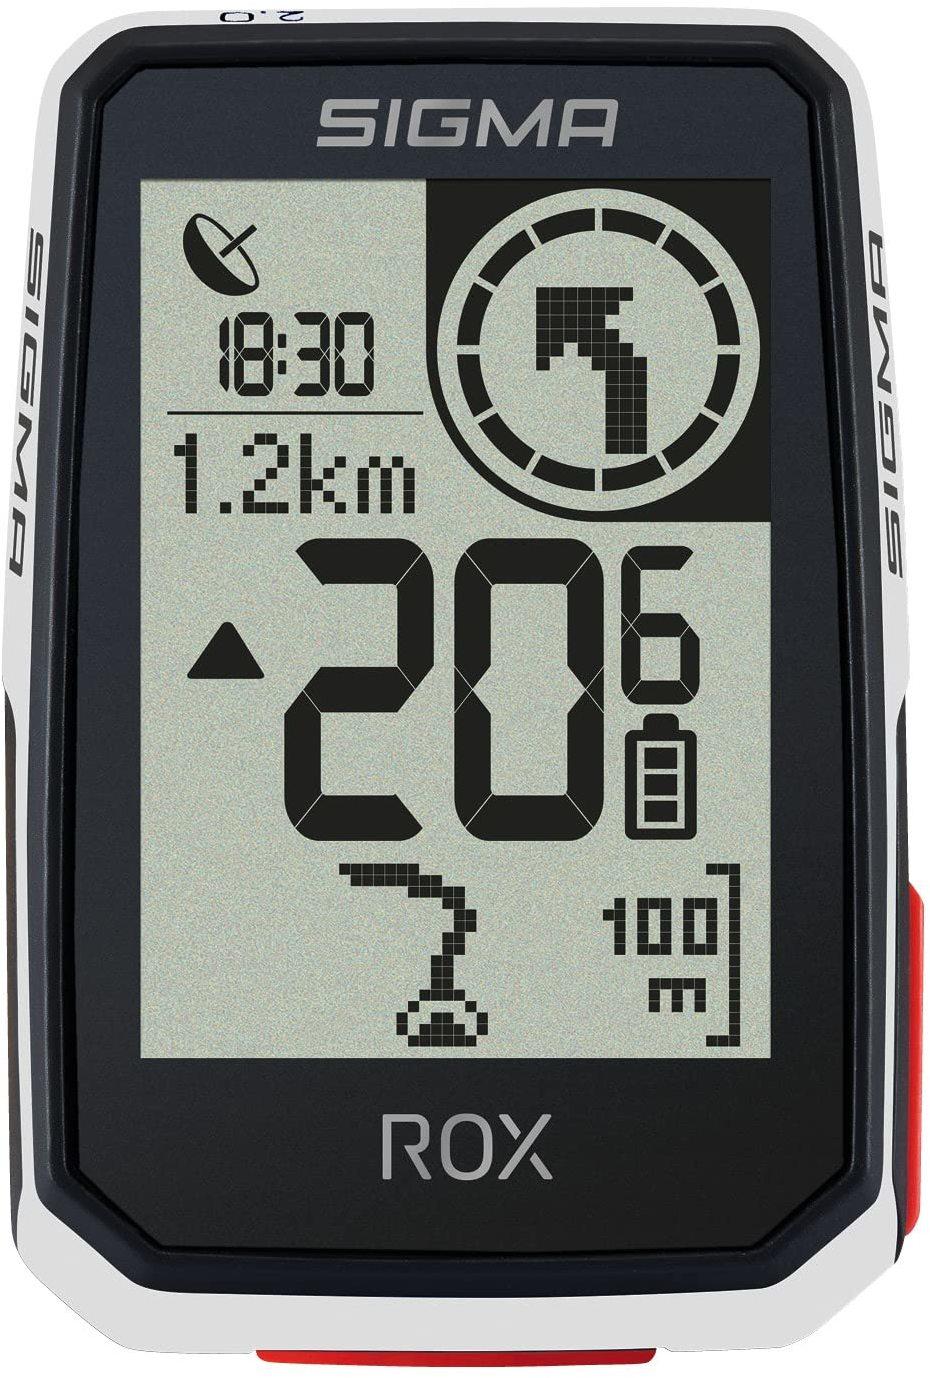 Sigma ROX 2.0 GPS white Erfahrungen 4.1/5 Sternen